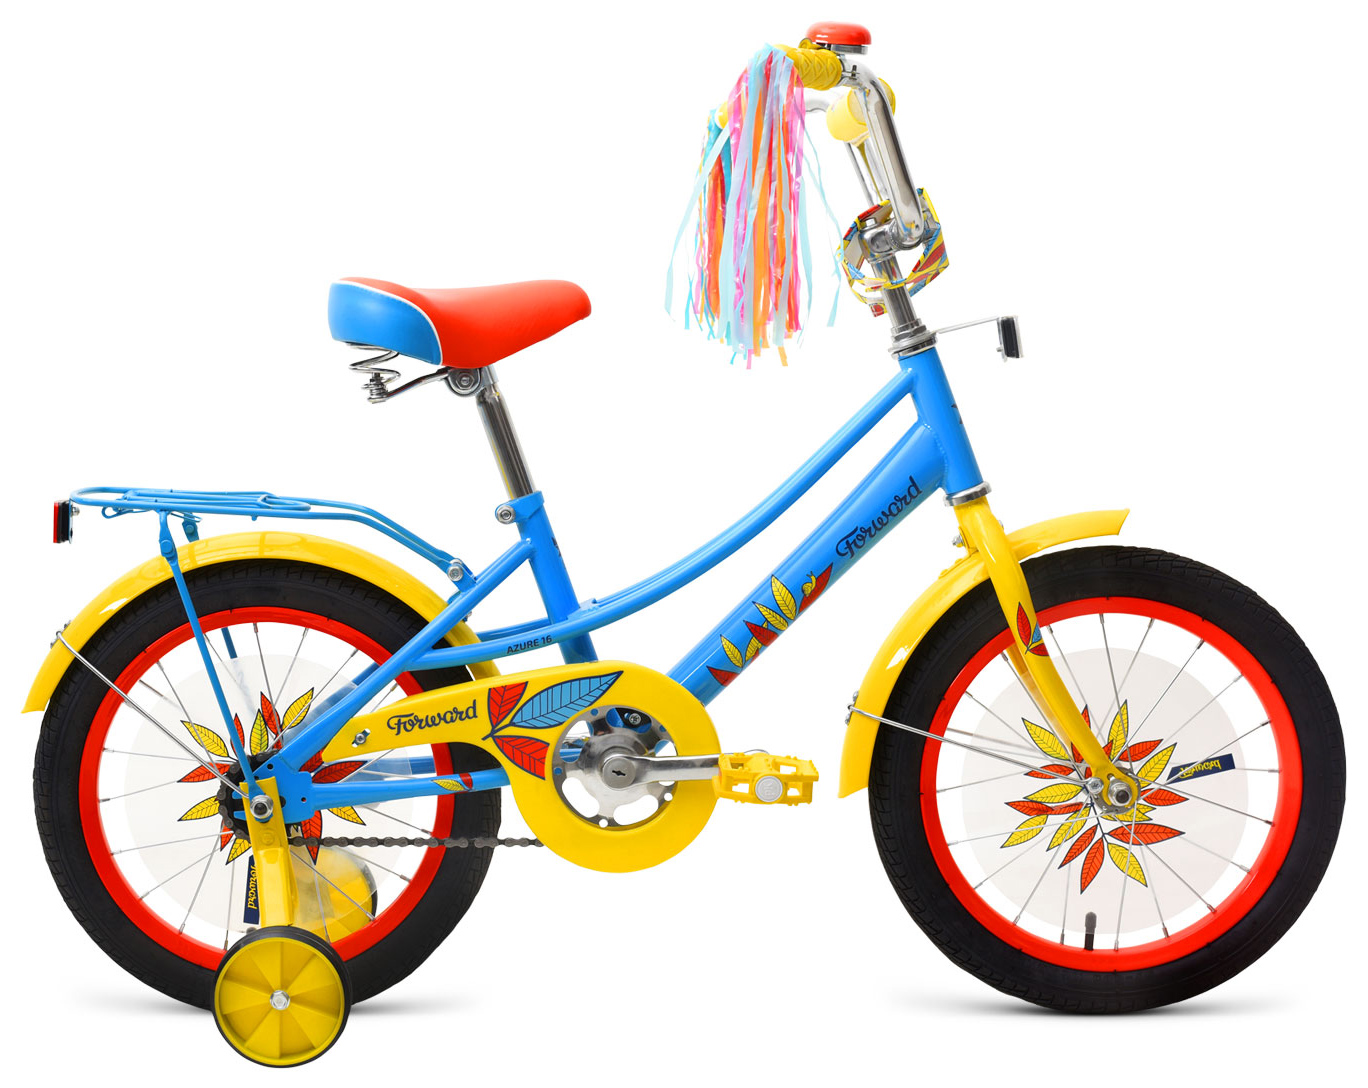  Отзывы о Трехколесный детский велосипед Forward Azure 16 2019